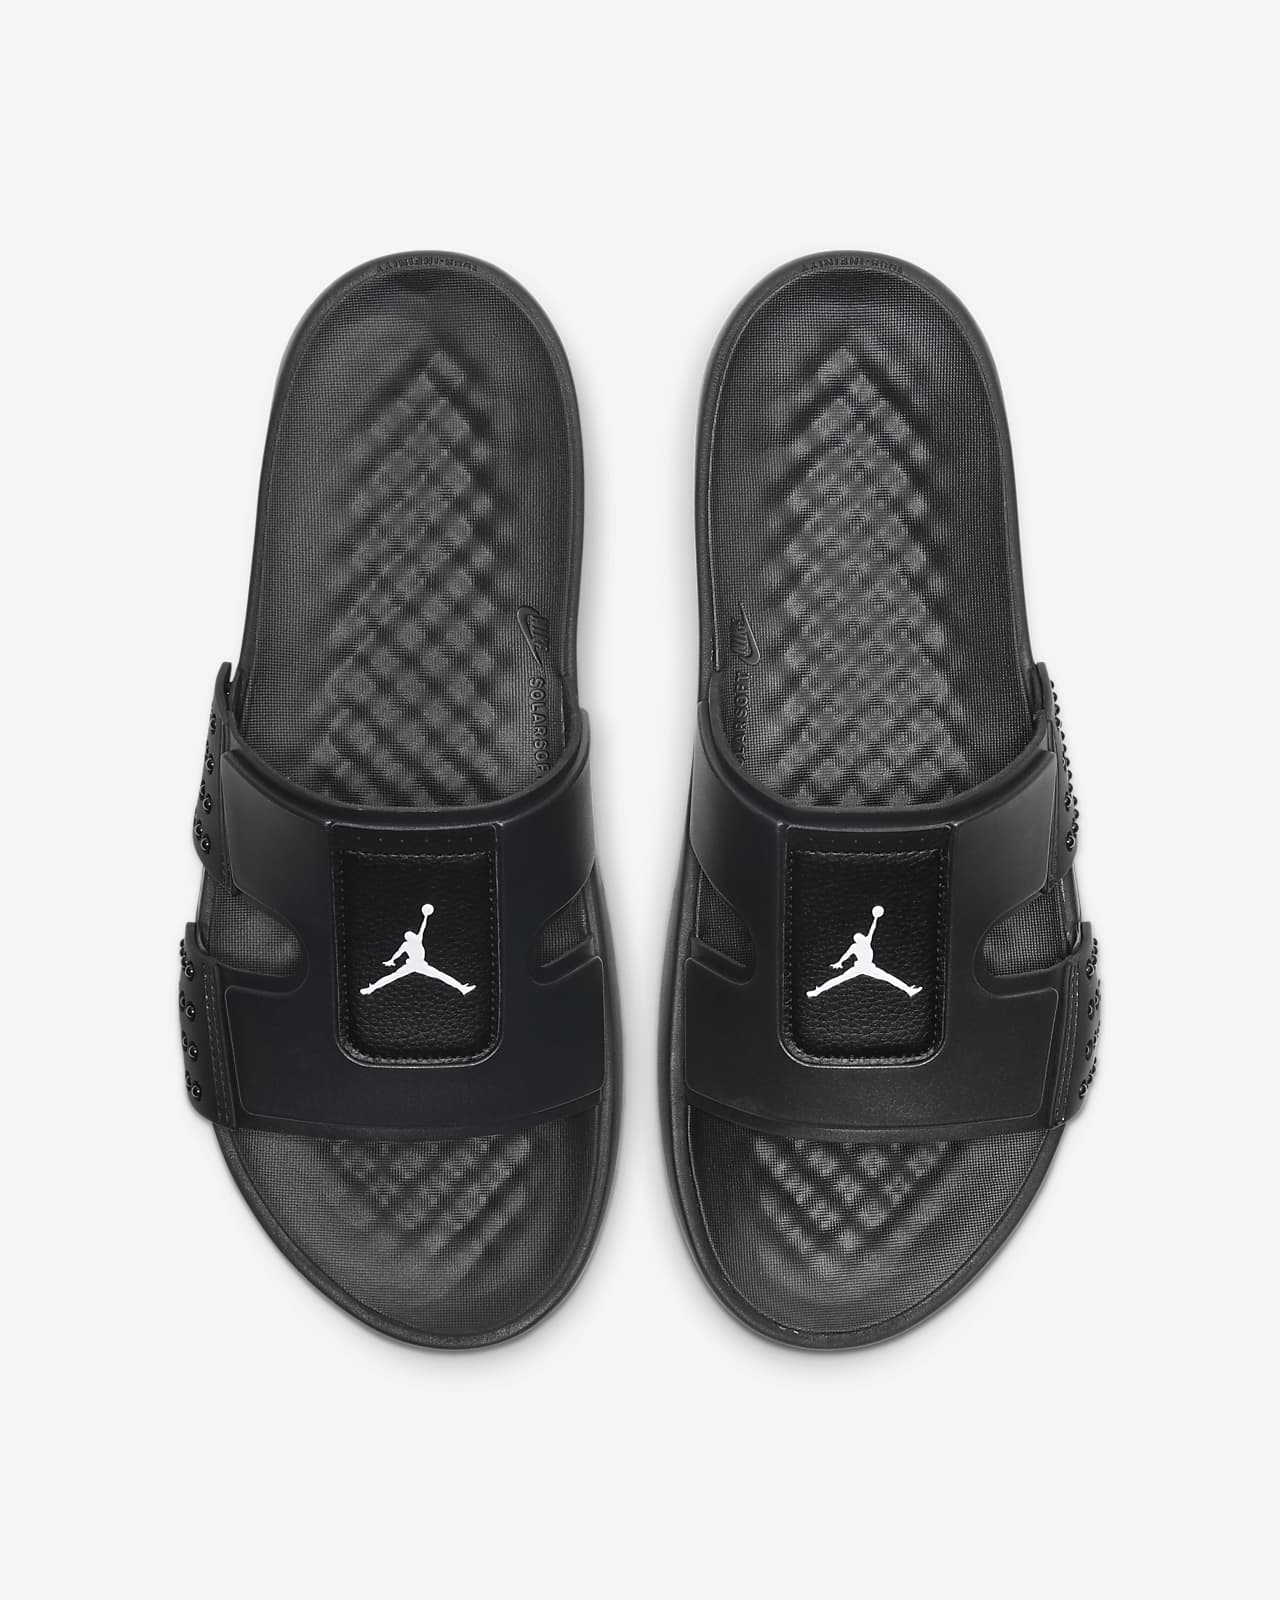 Jordan Hydro 8 拖鞋。Nike TW